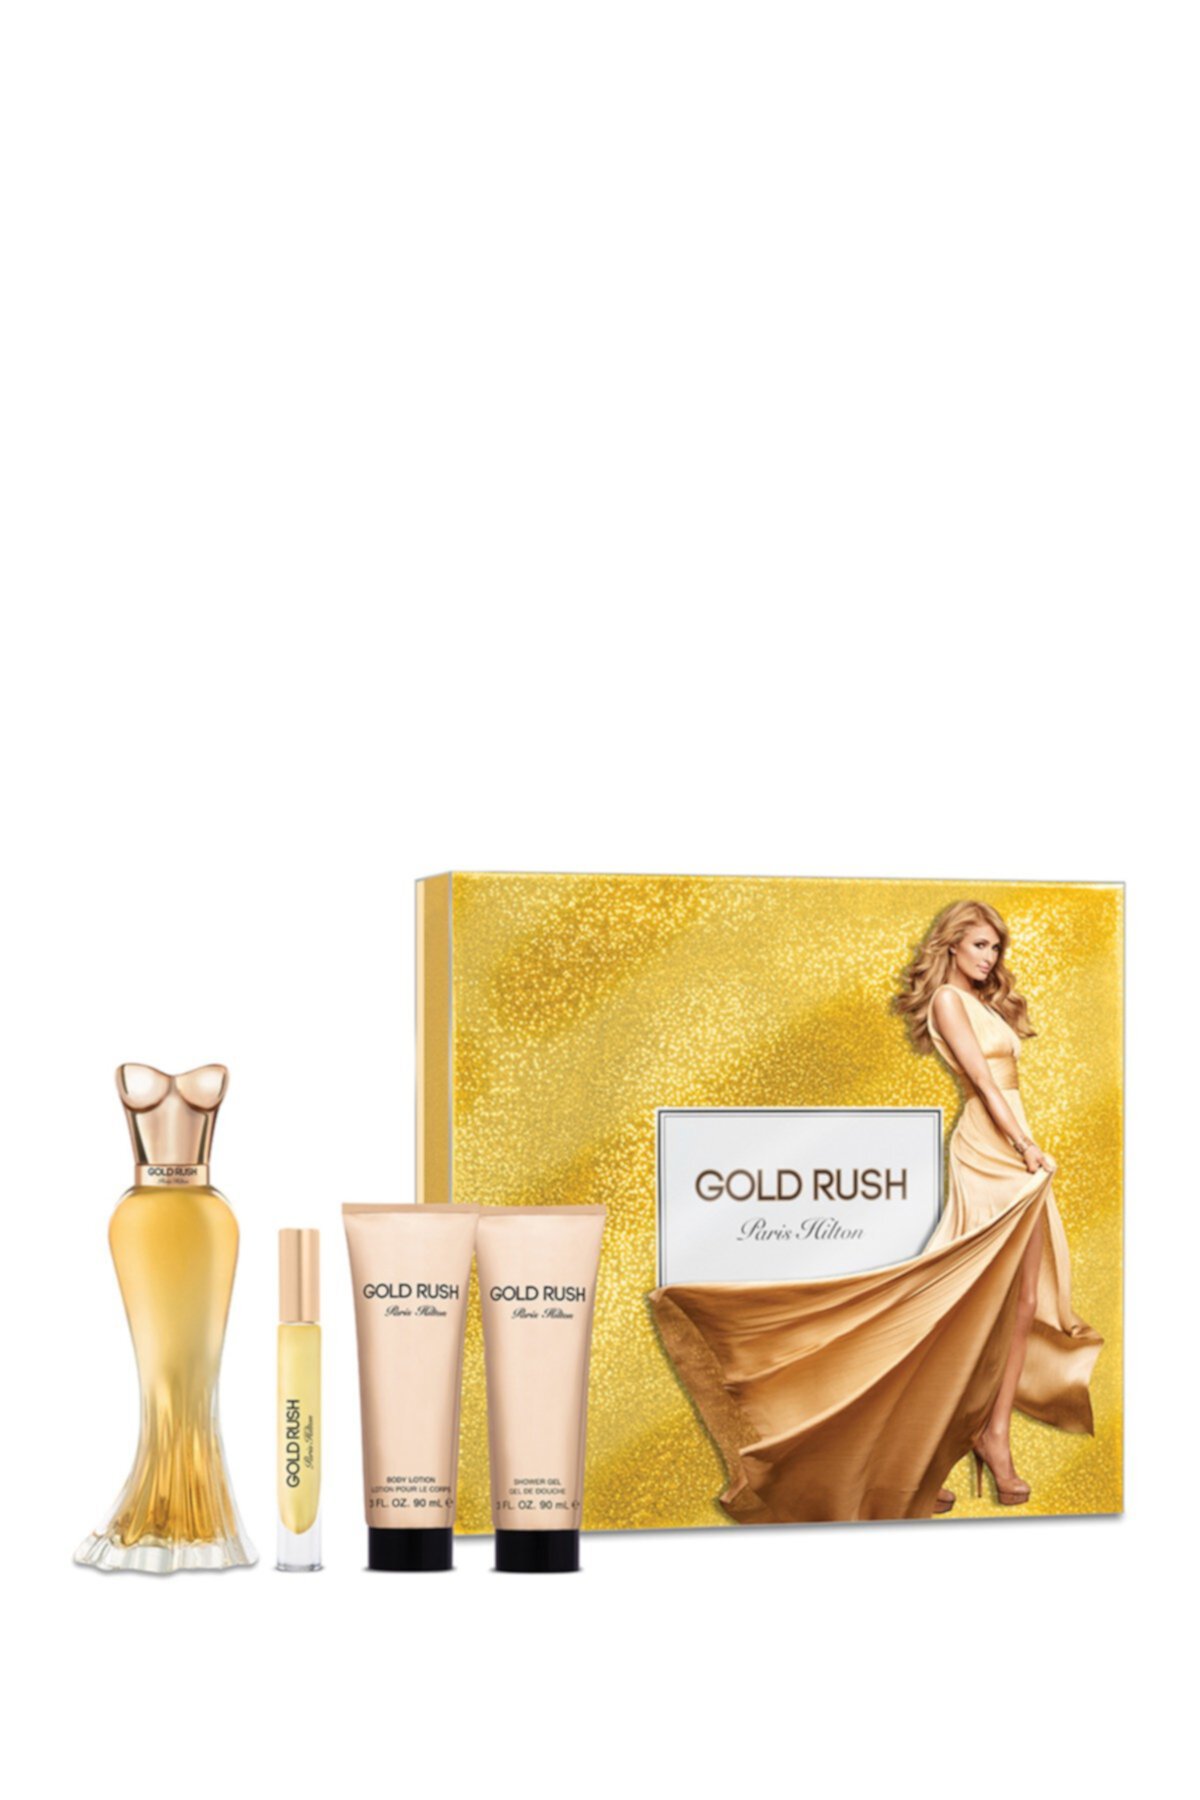 Подарочный набор из 4 предметов Gold Rush Paris Hilton